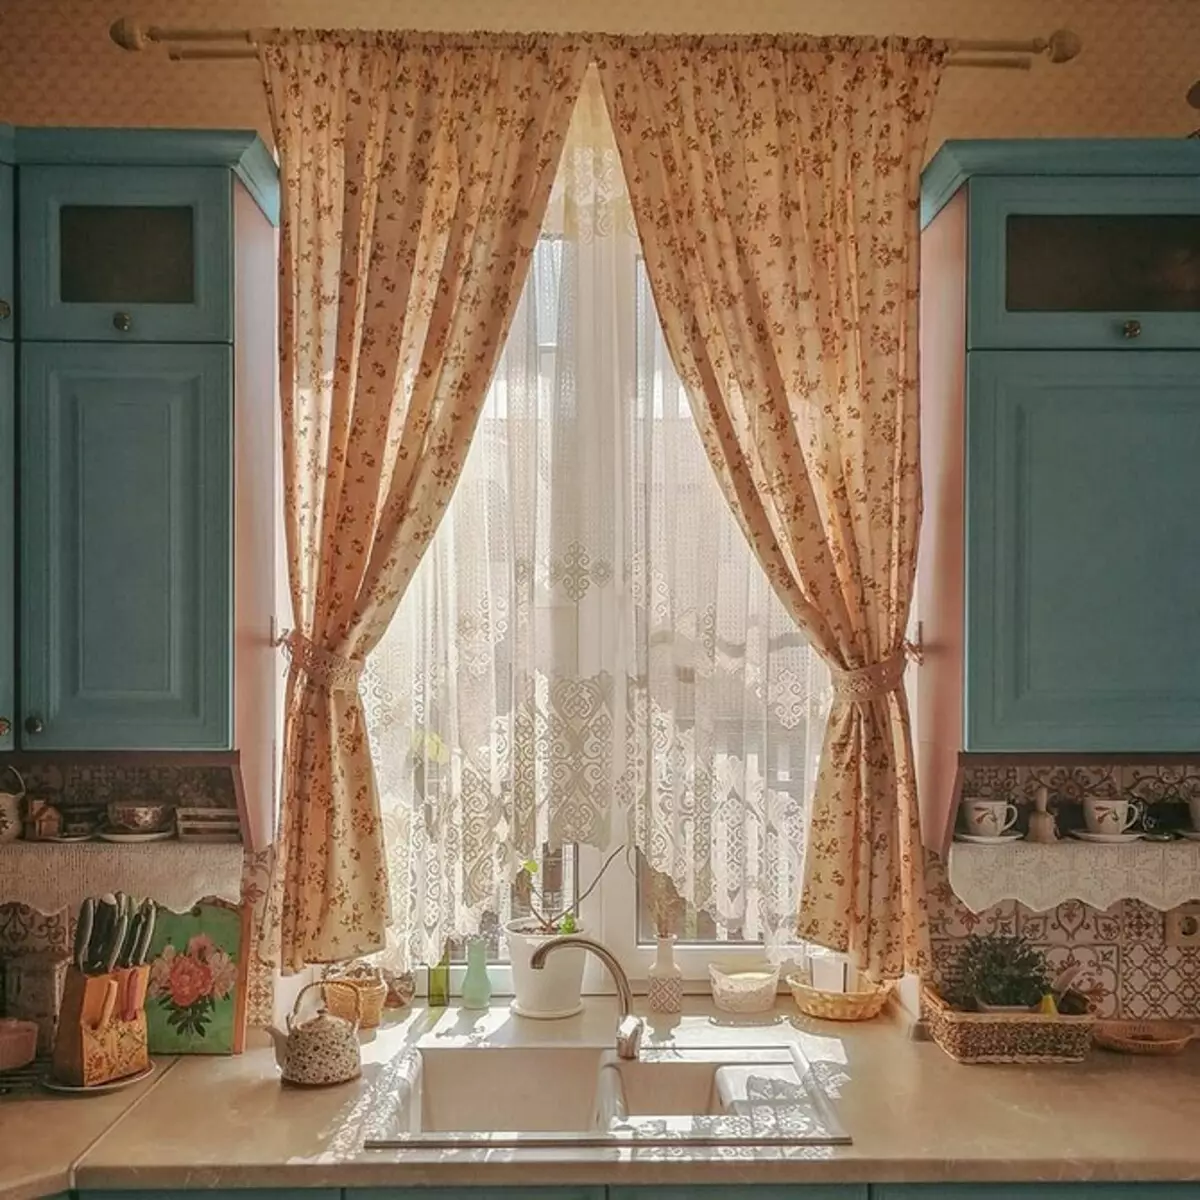 دکور پنجره زیبا در آشپزخانه: نوع حلقه و سبک داخلی را در نظر بگیرید 4732_56